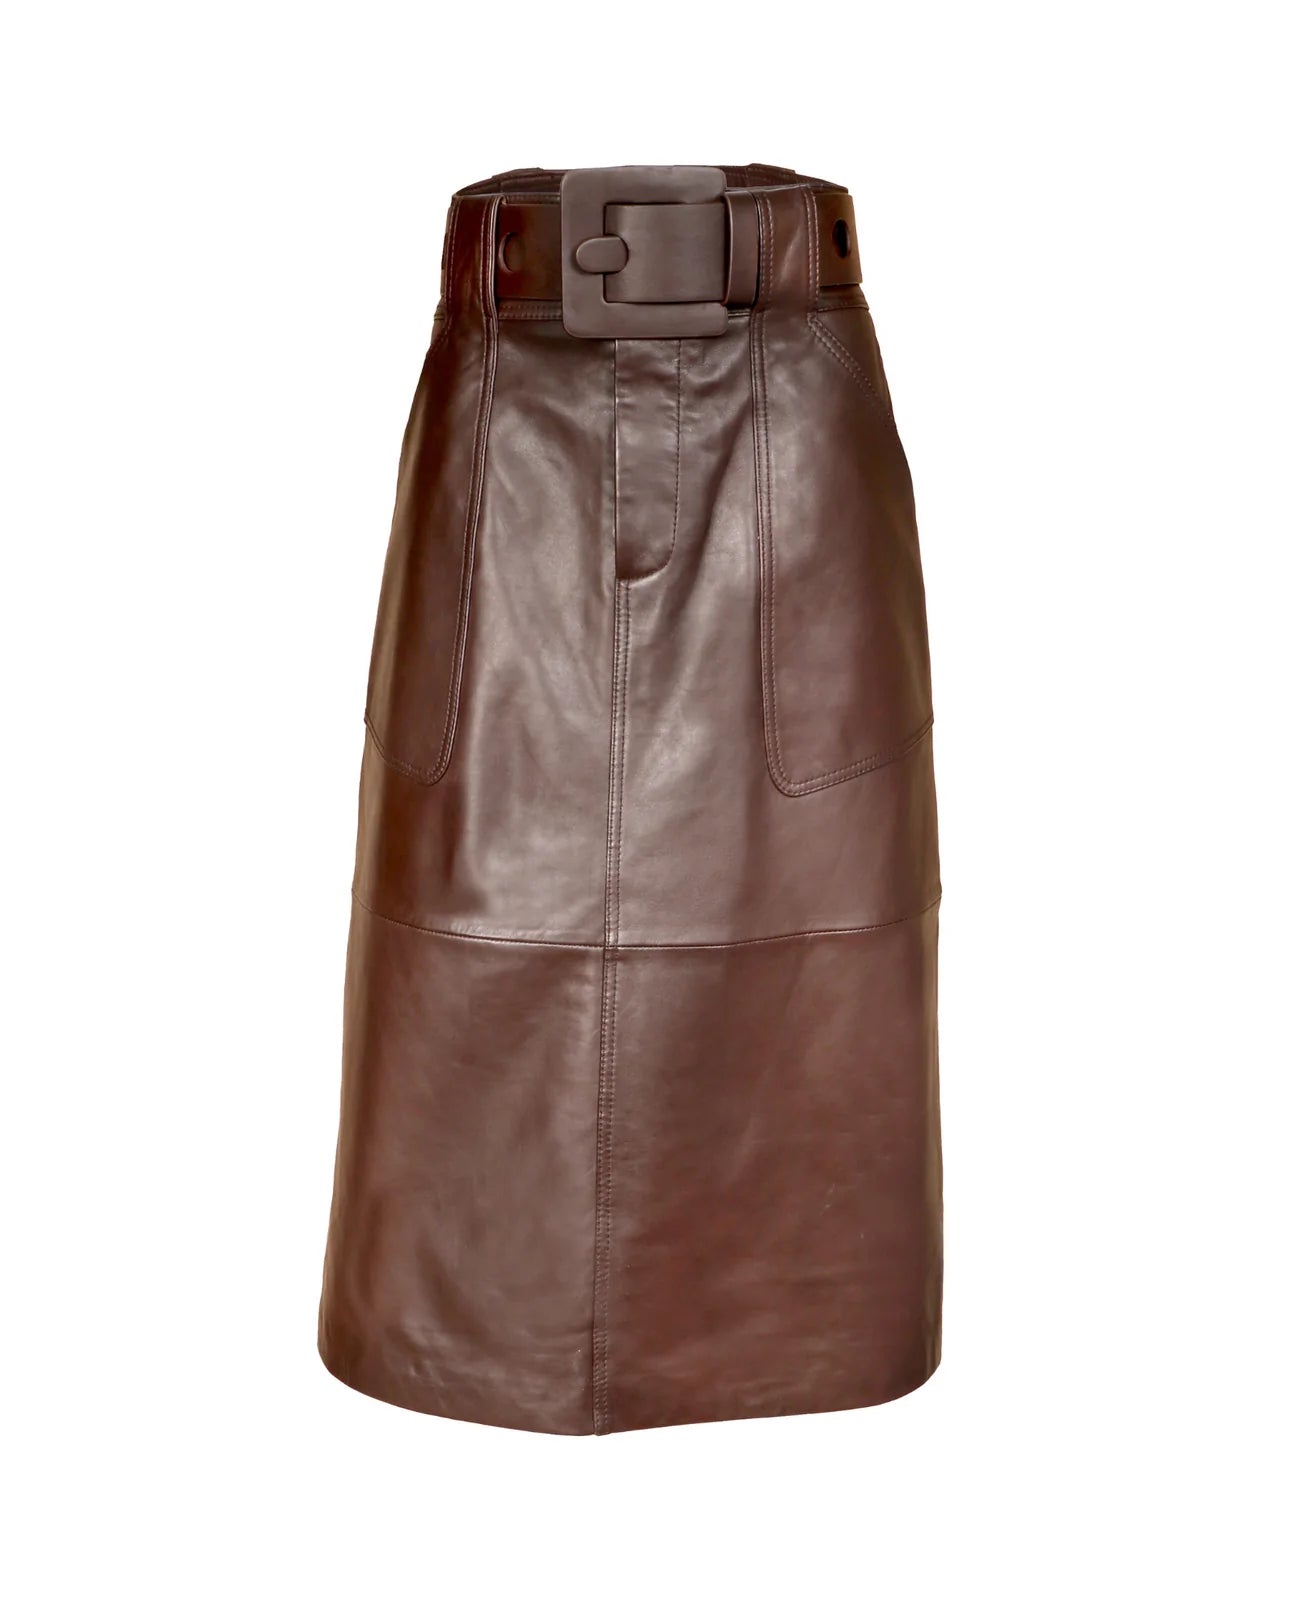 SEA Ayden Leather Maxi Skirt